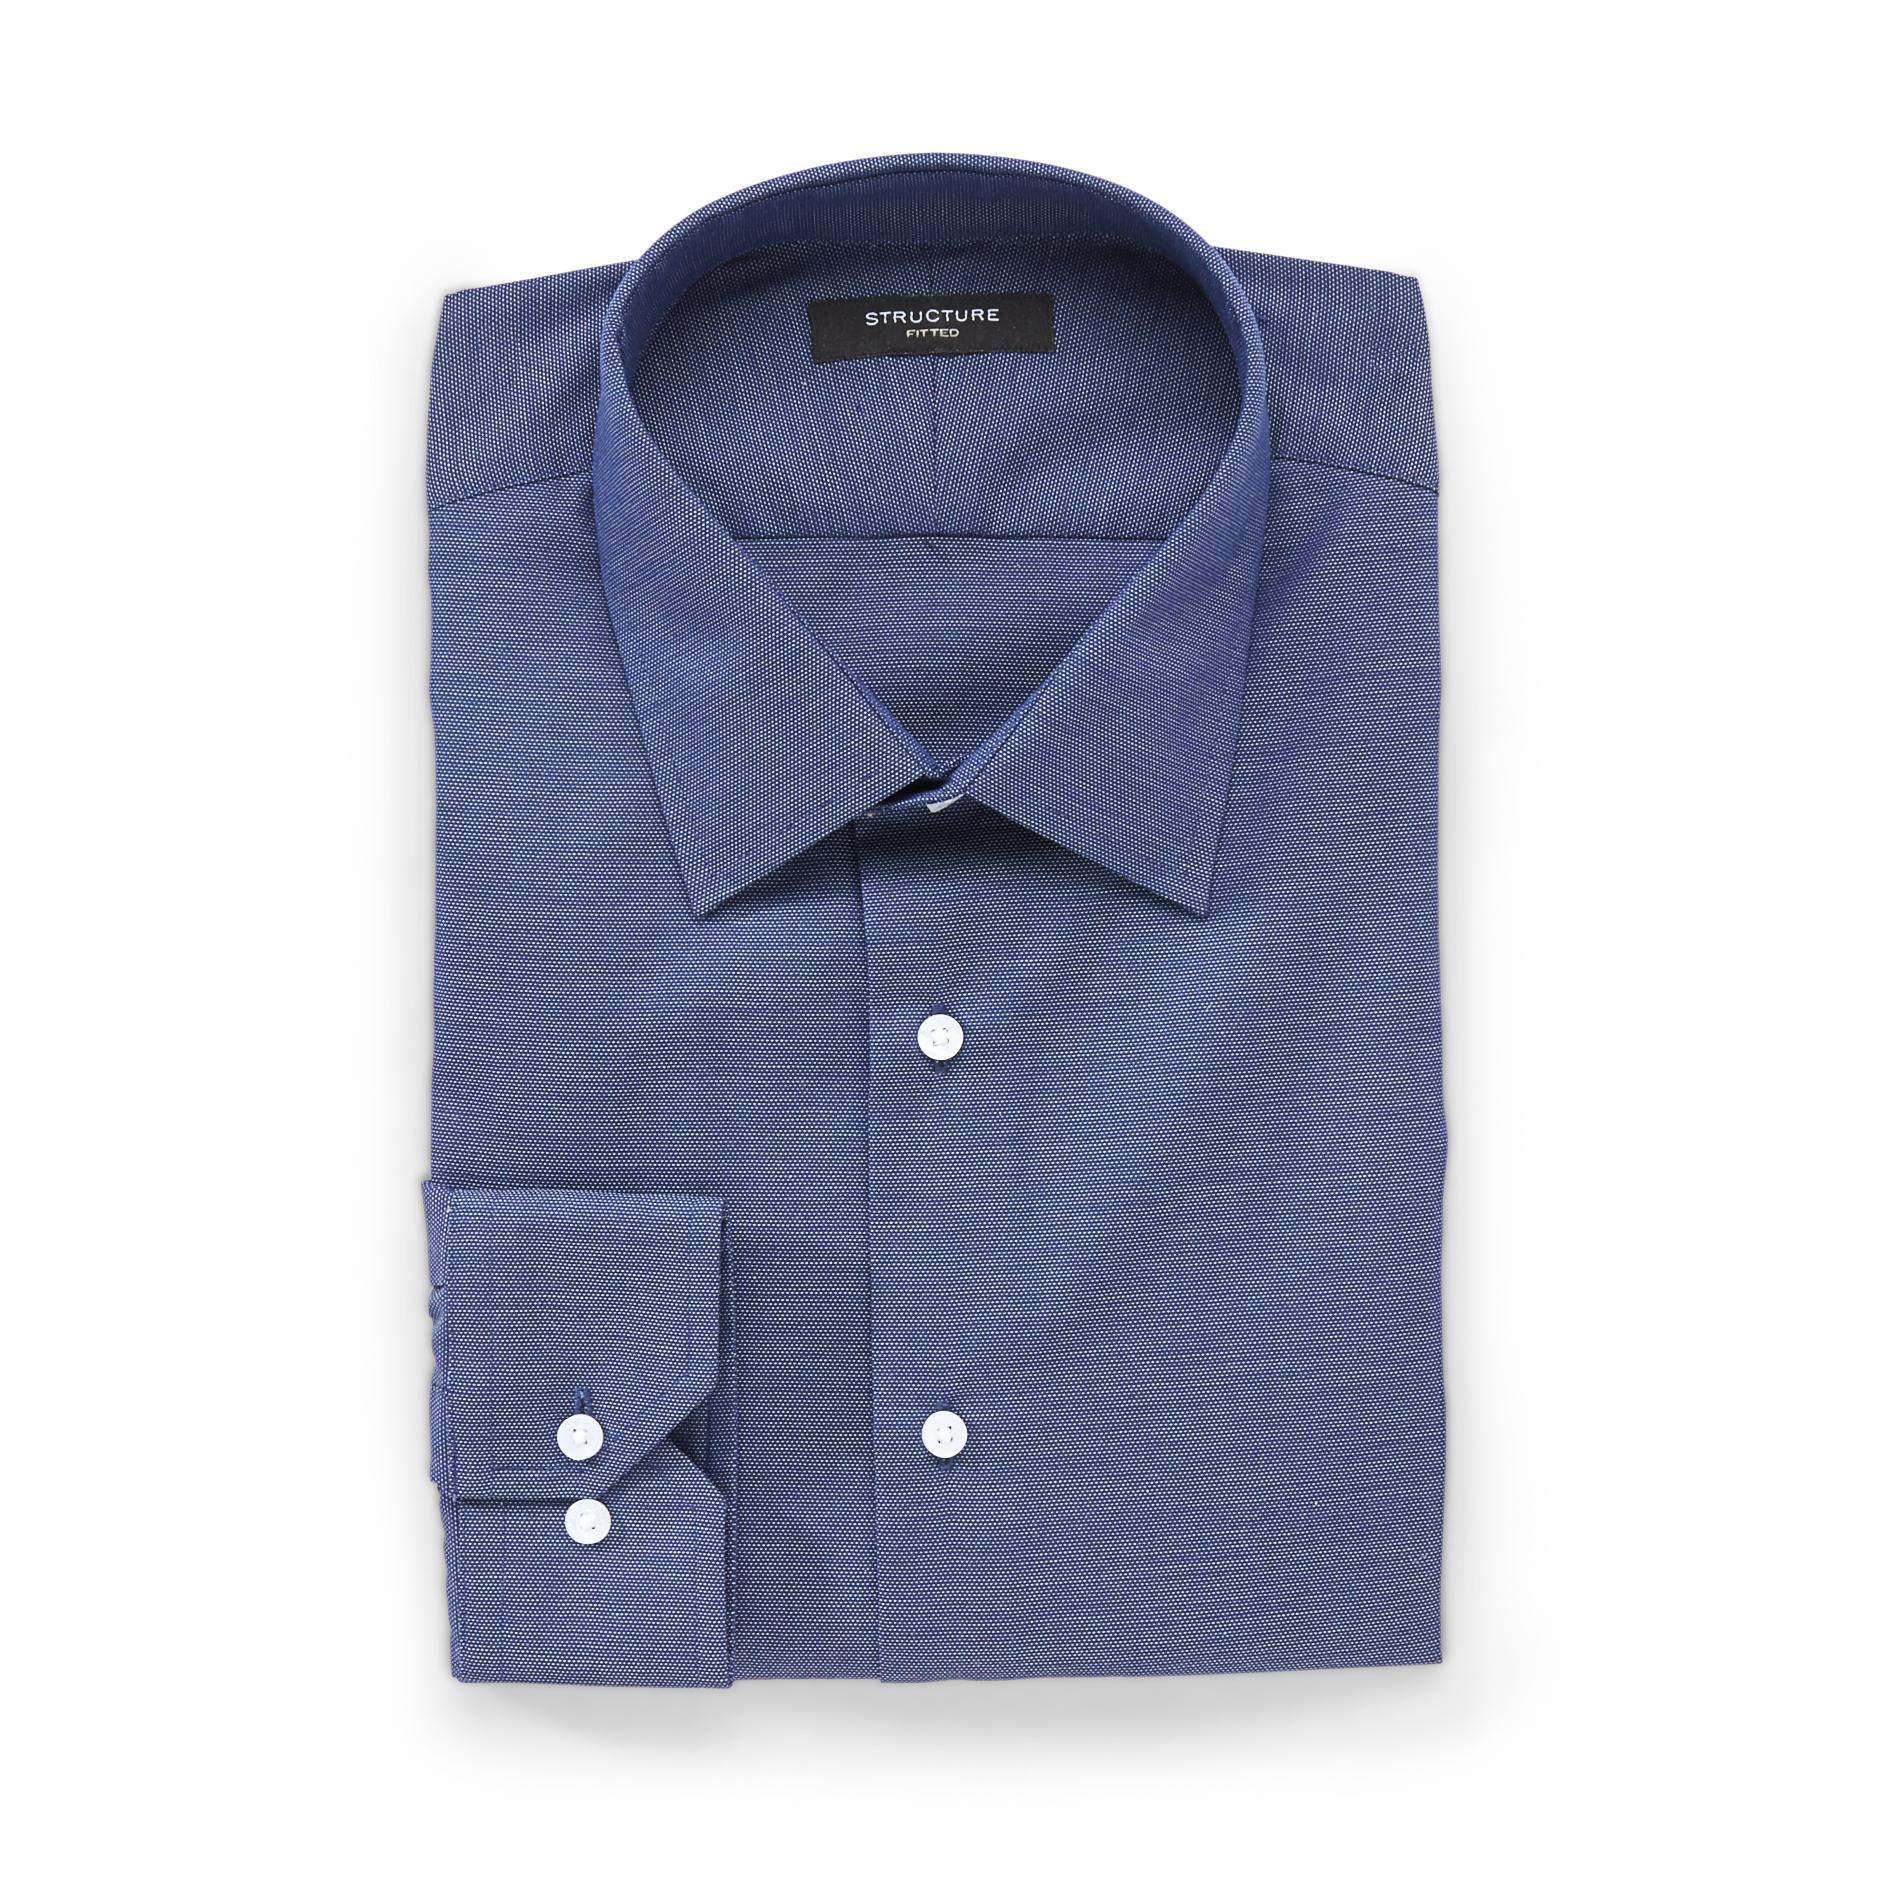 Structure Men's Dress Shirt - Pin Dot